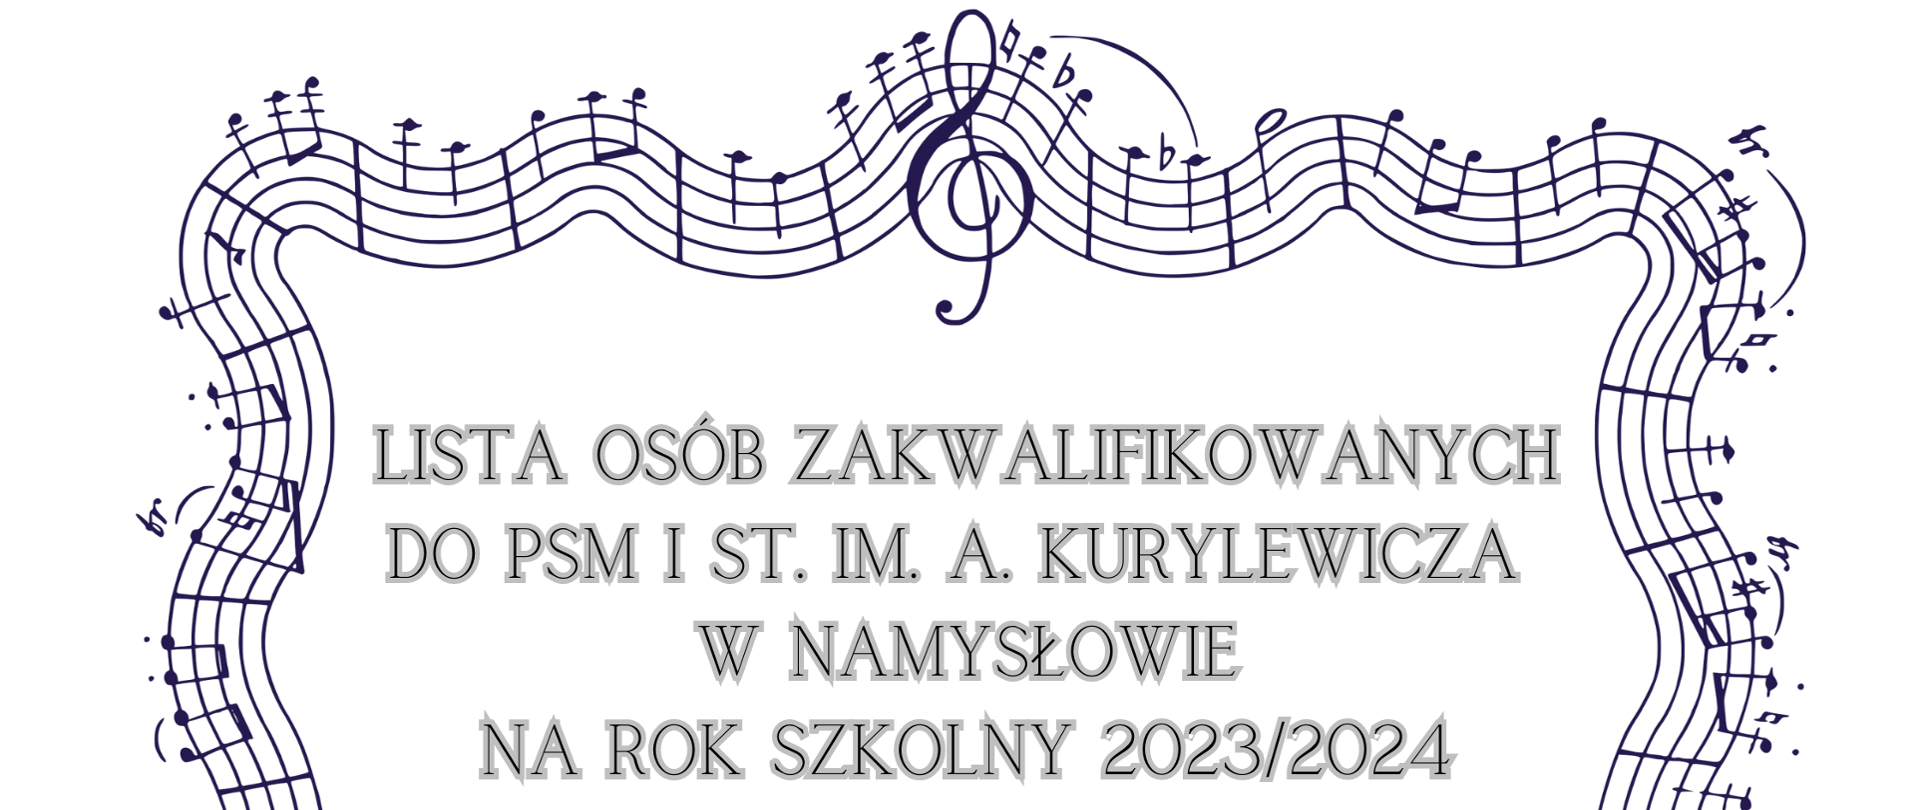 Plakat z białym tłem, na środku zapis " Lista osób zakwalifikowanych do PSM I st. im. A. Kurylewicza w Namysłowie na rok szkolny 2023/2024" otoczony czarną pięciolinią \z nutami.